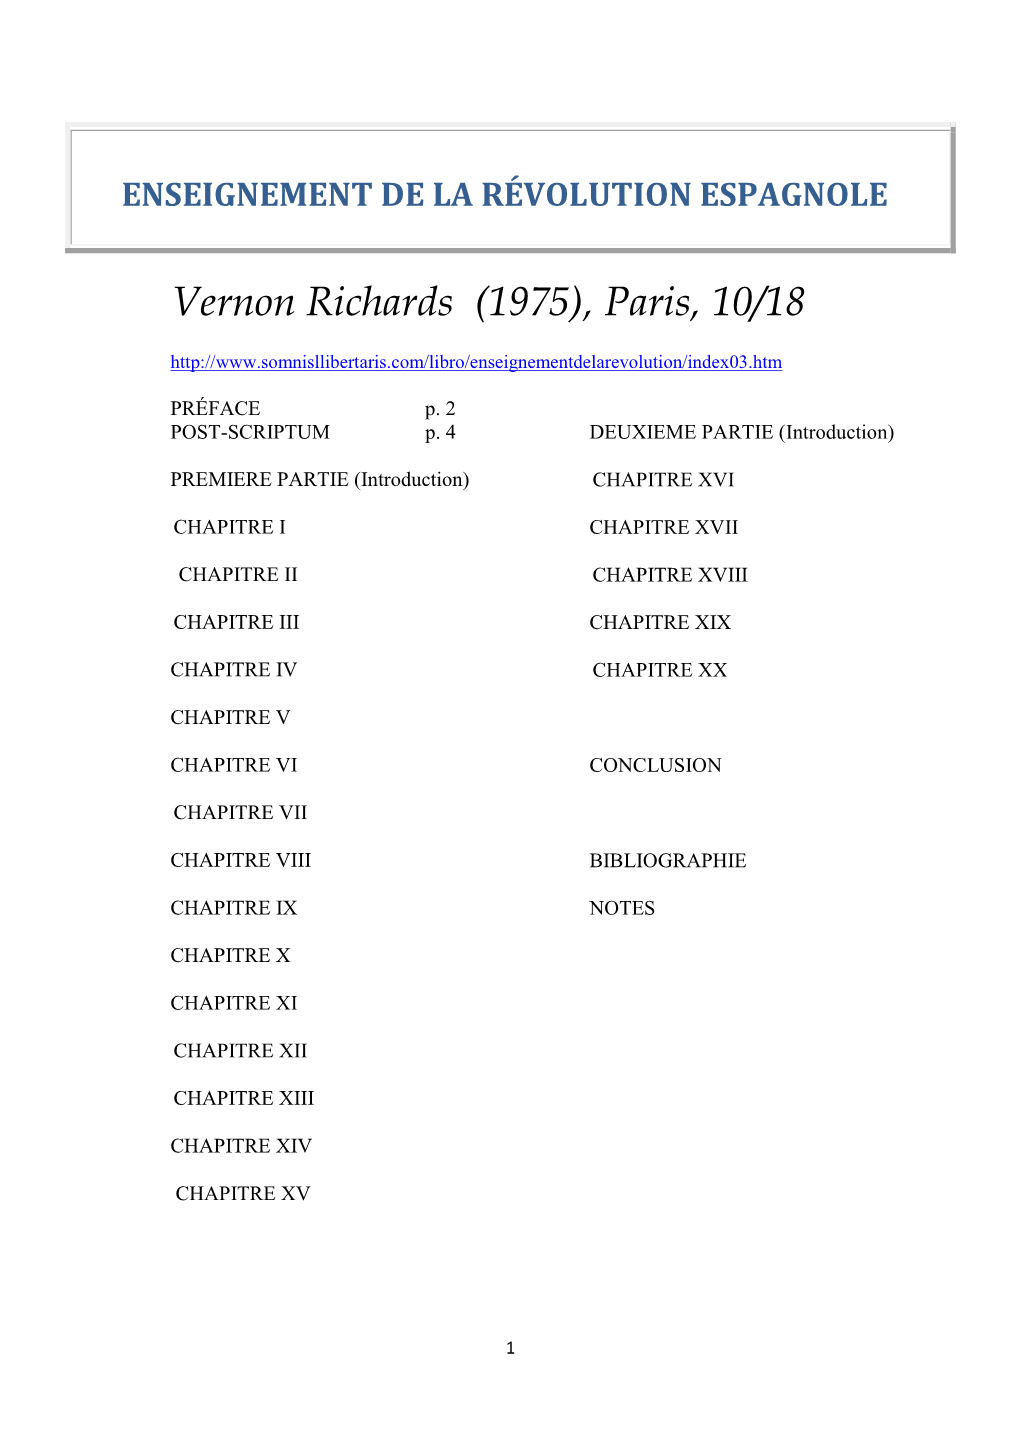 Vernon Richards (1975), Paris, 10/18